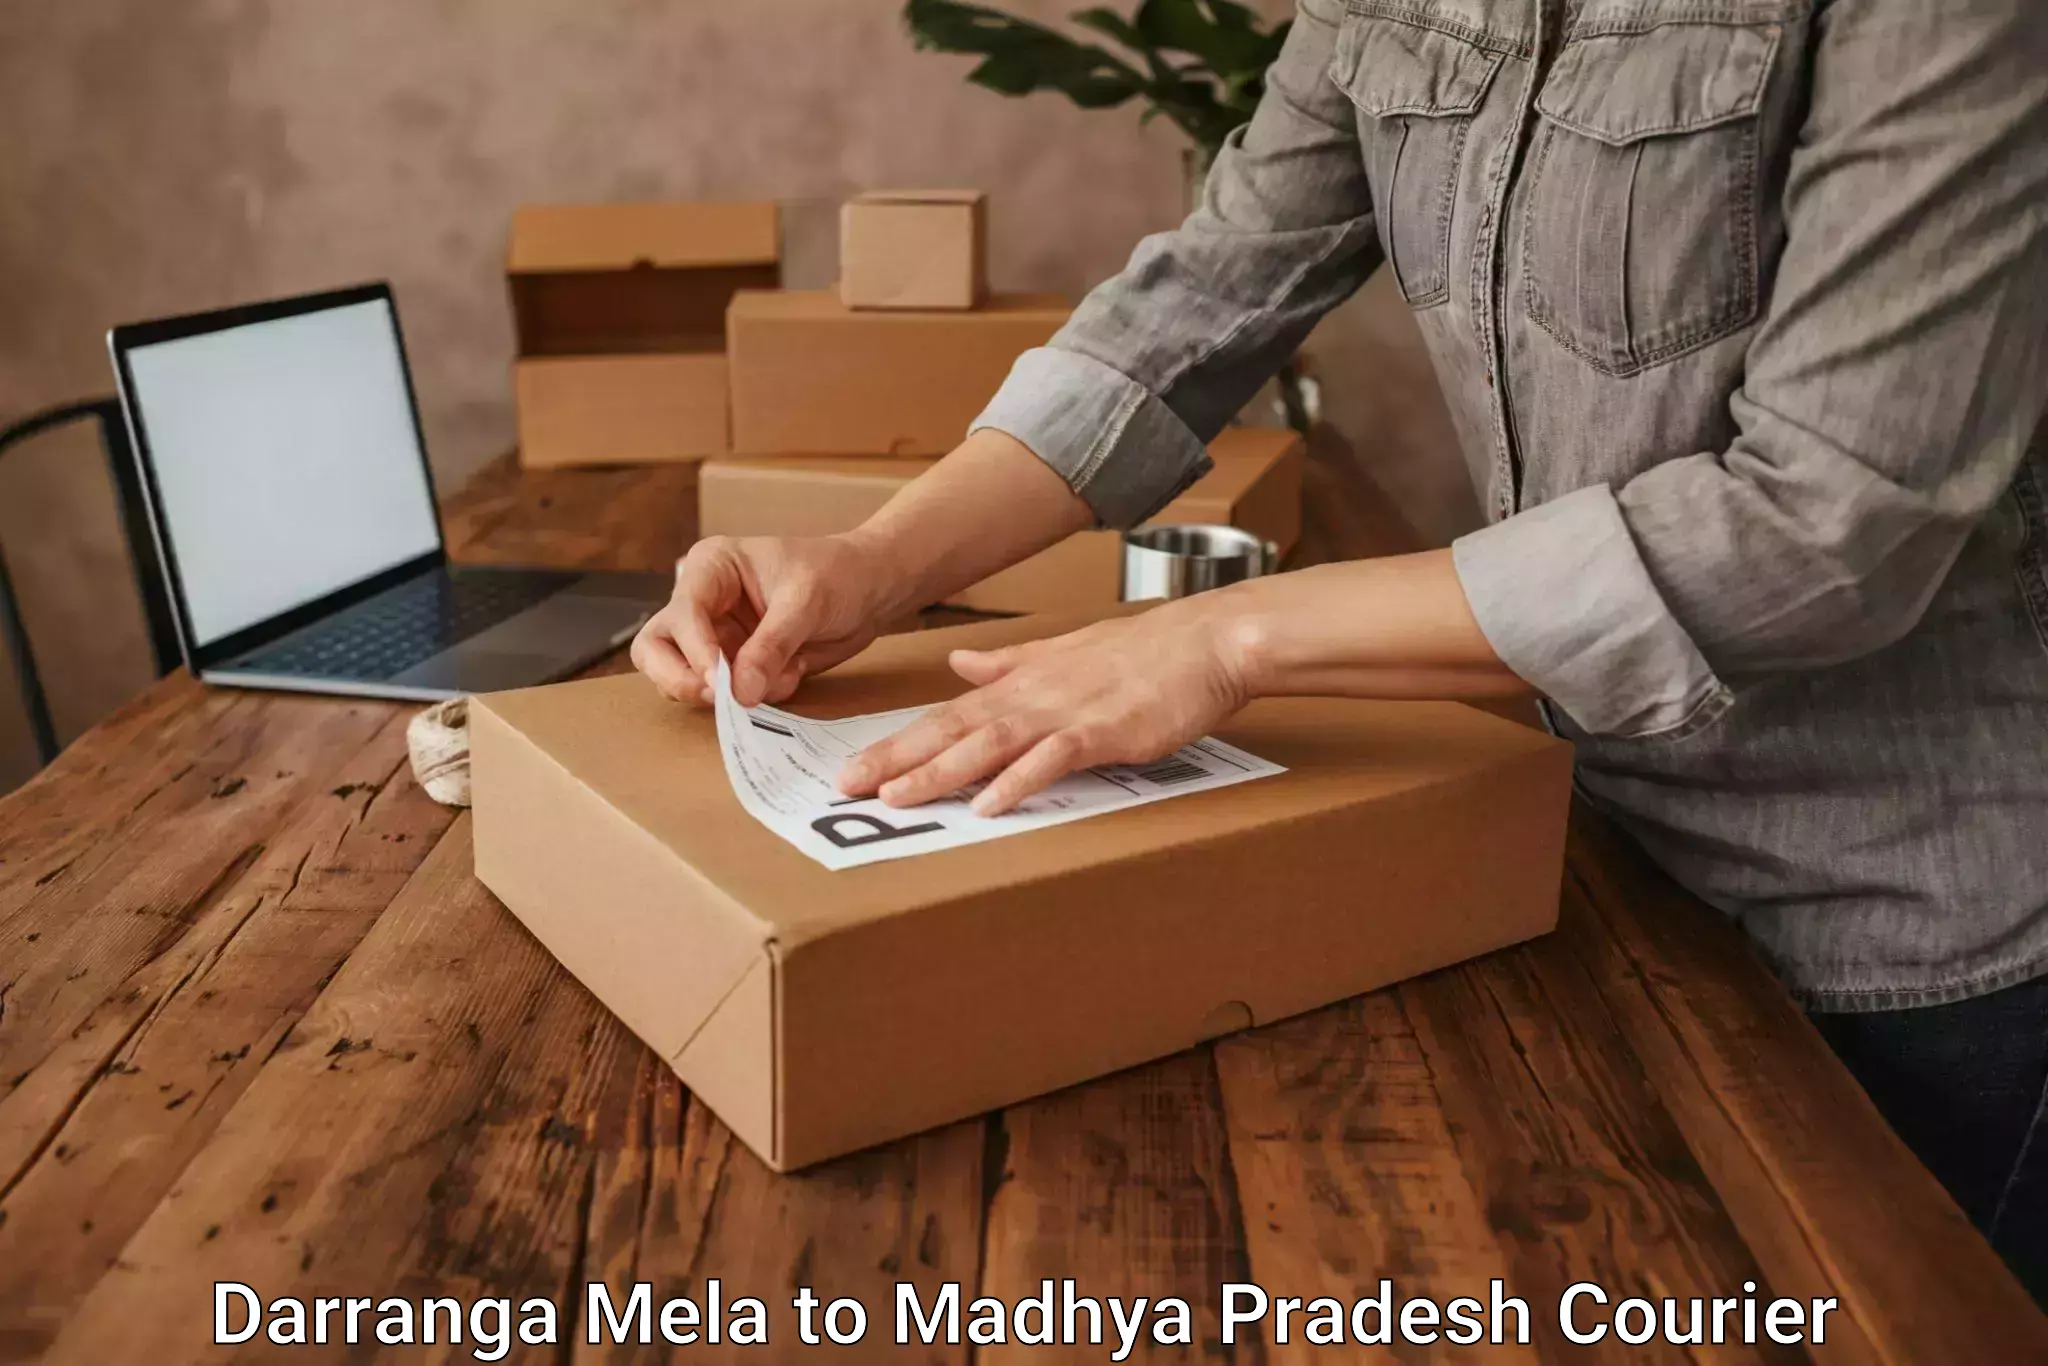 Multi-national courier services Darranga Mela to Morena